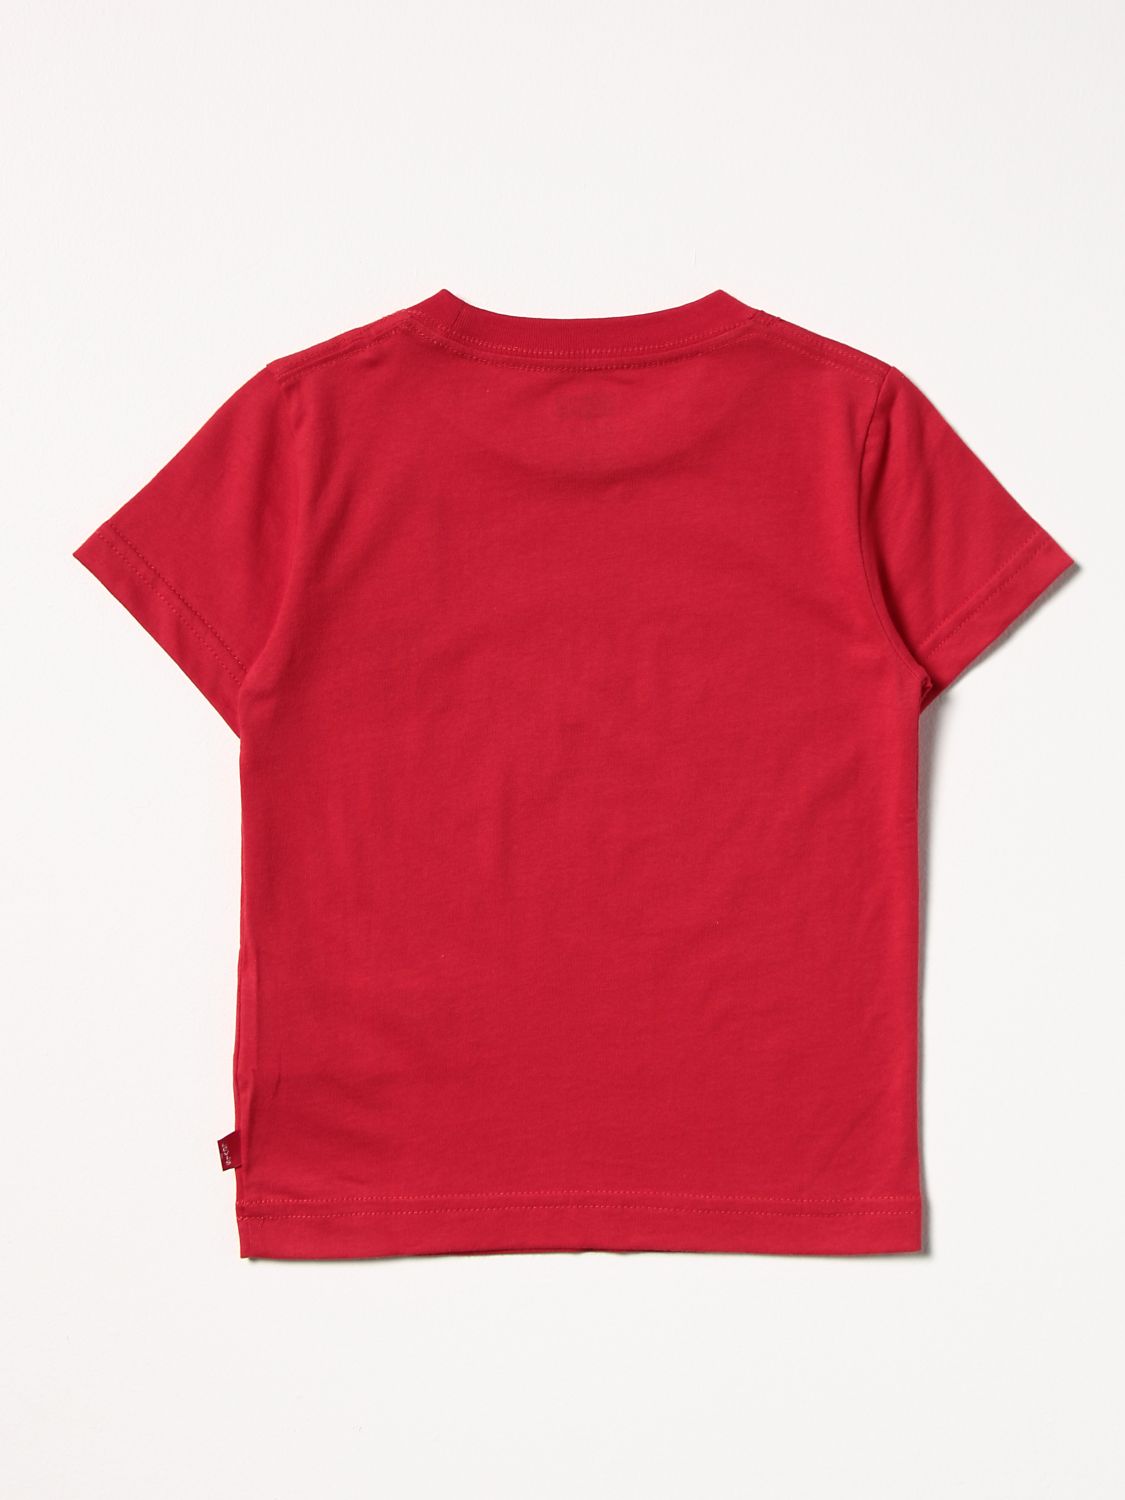 T-Shirt Levi's: T-shirt kinder Levi's rot 2